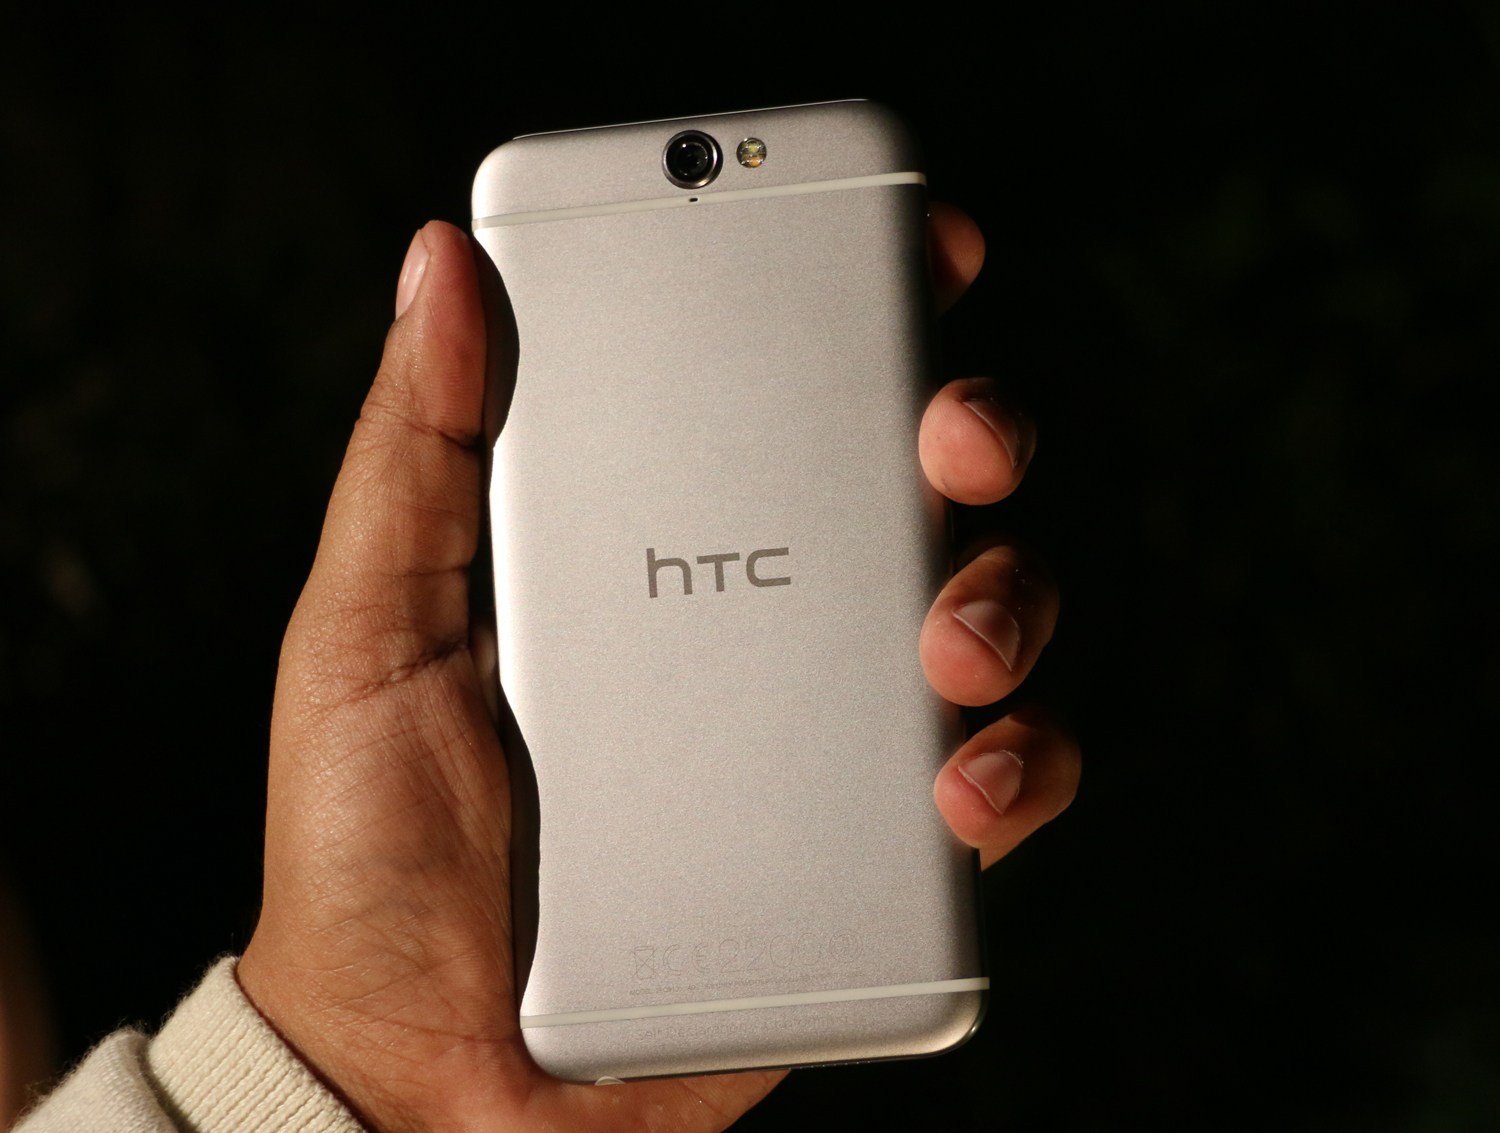 Primera impresión de HTC One A9: define la trayectoria de HTC reinventada